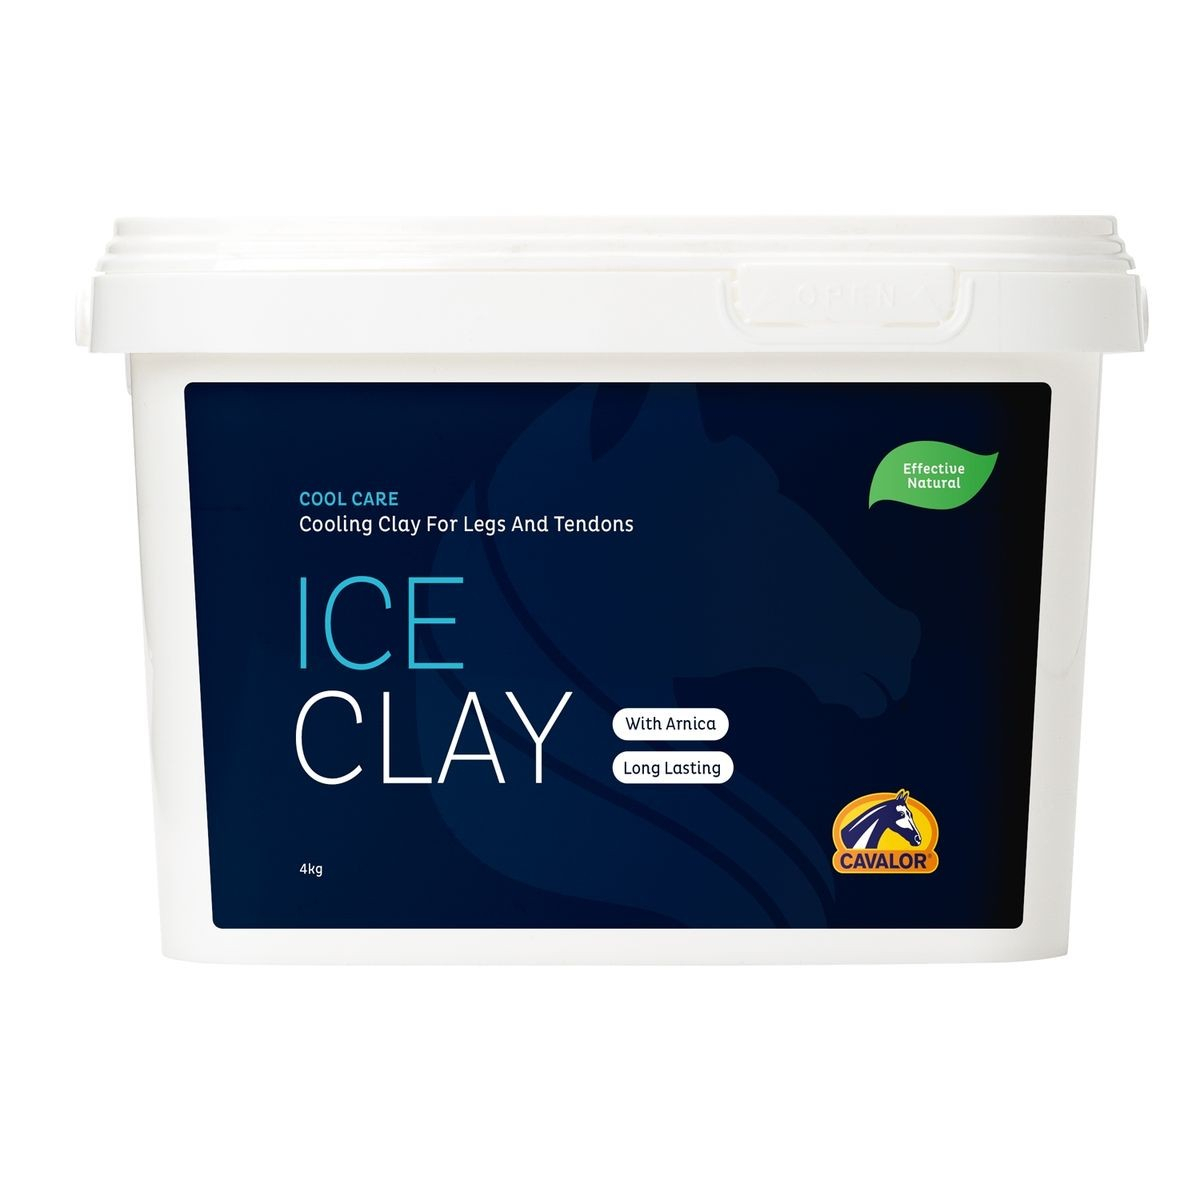 Cavalor Ice Clay argile naturelle pour chevaux